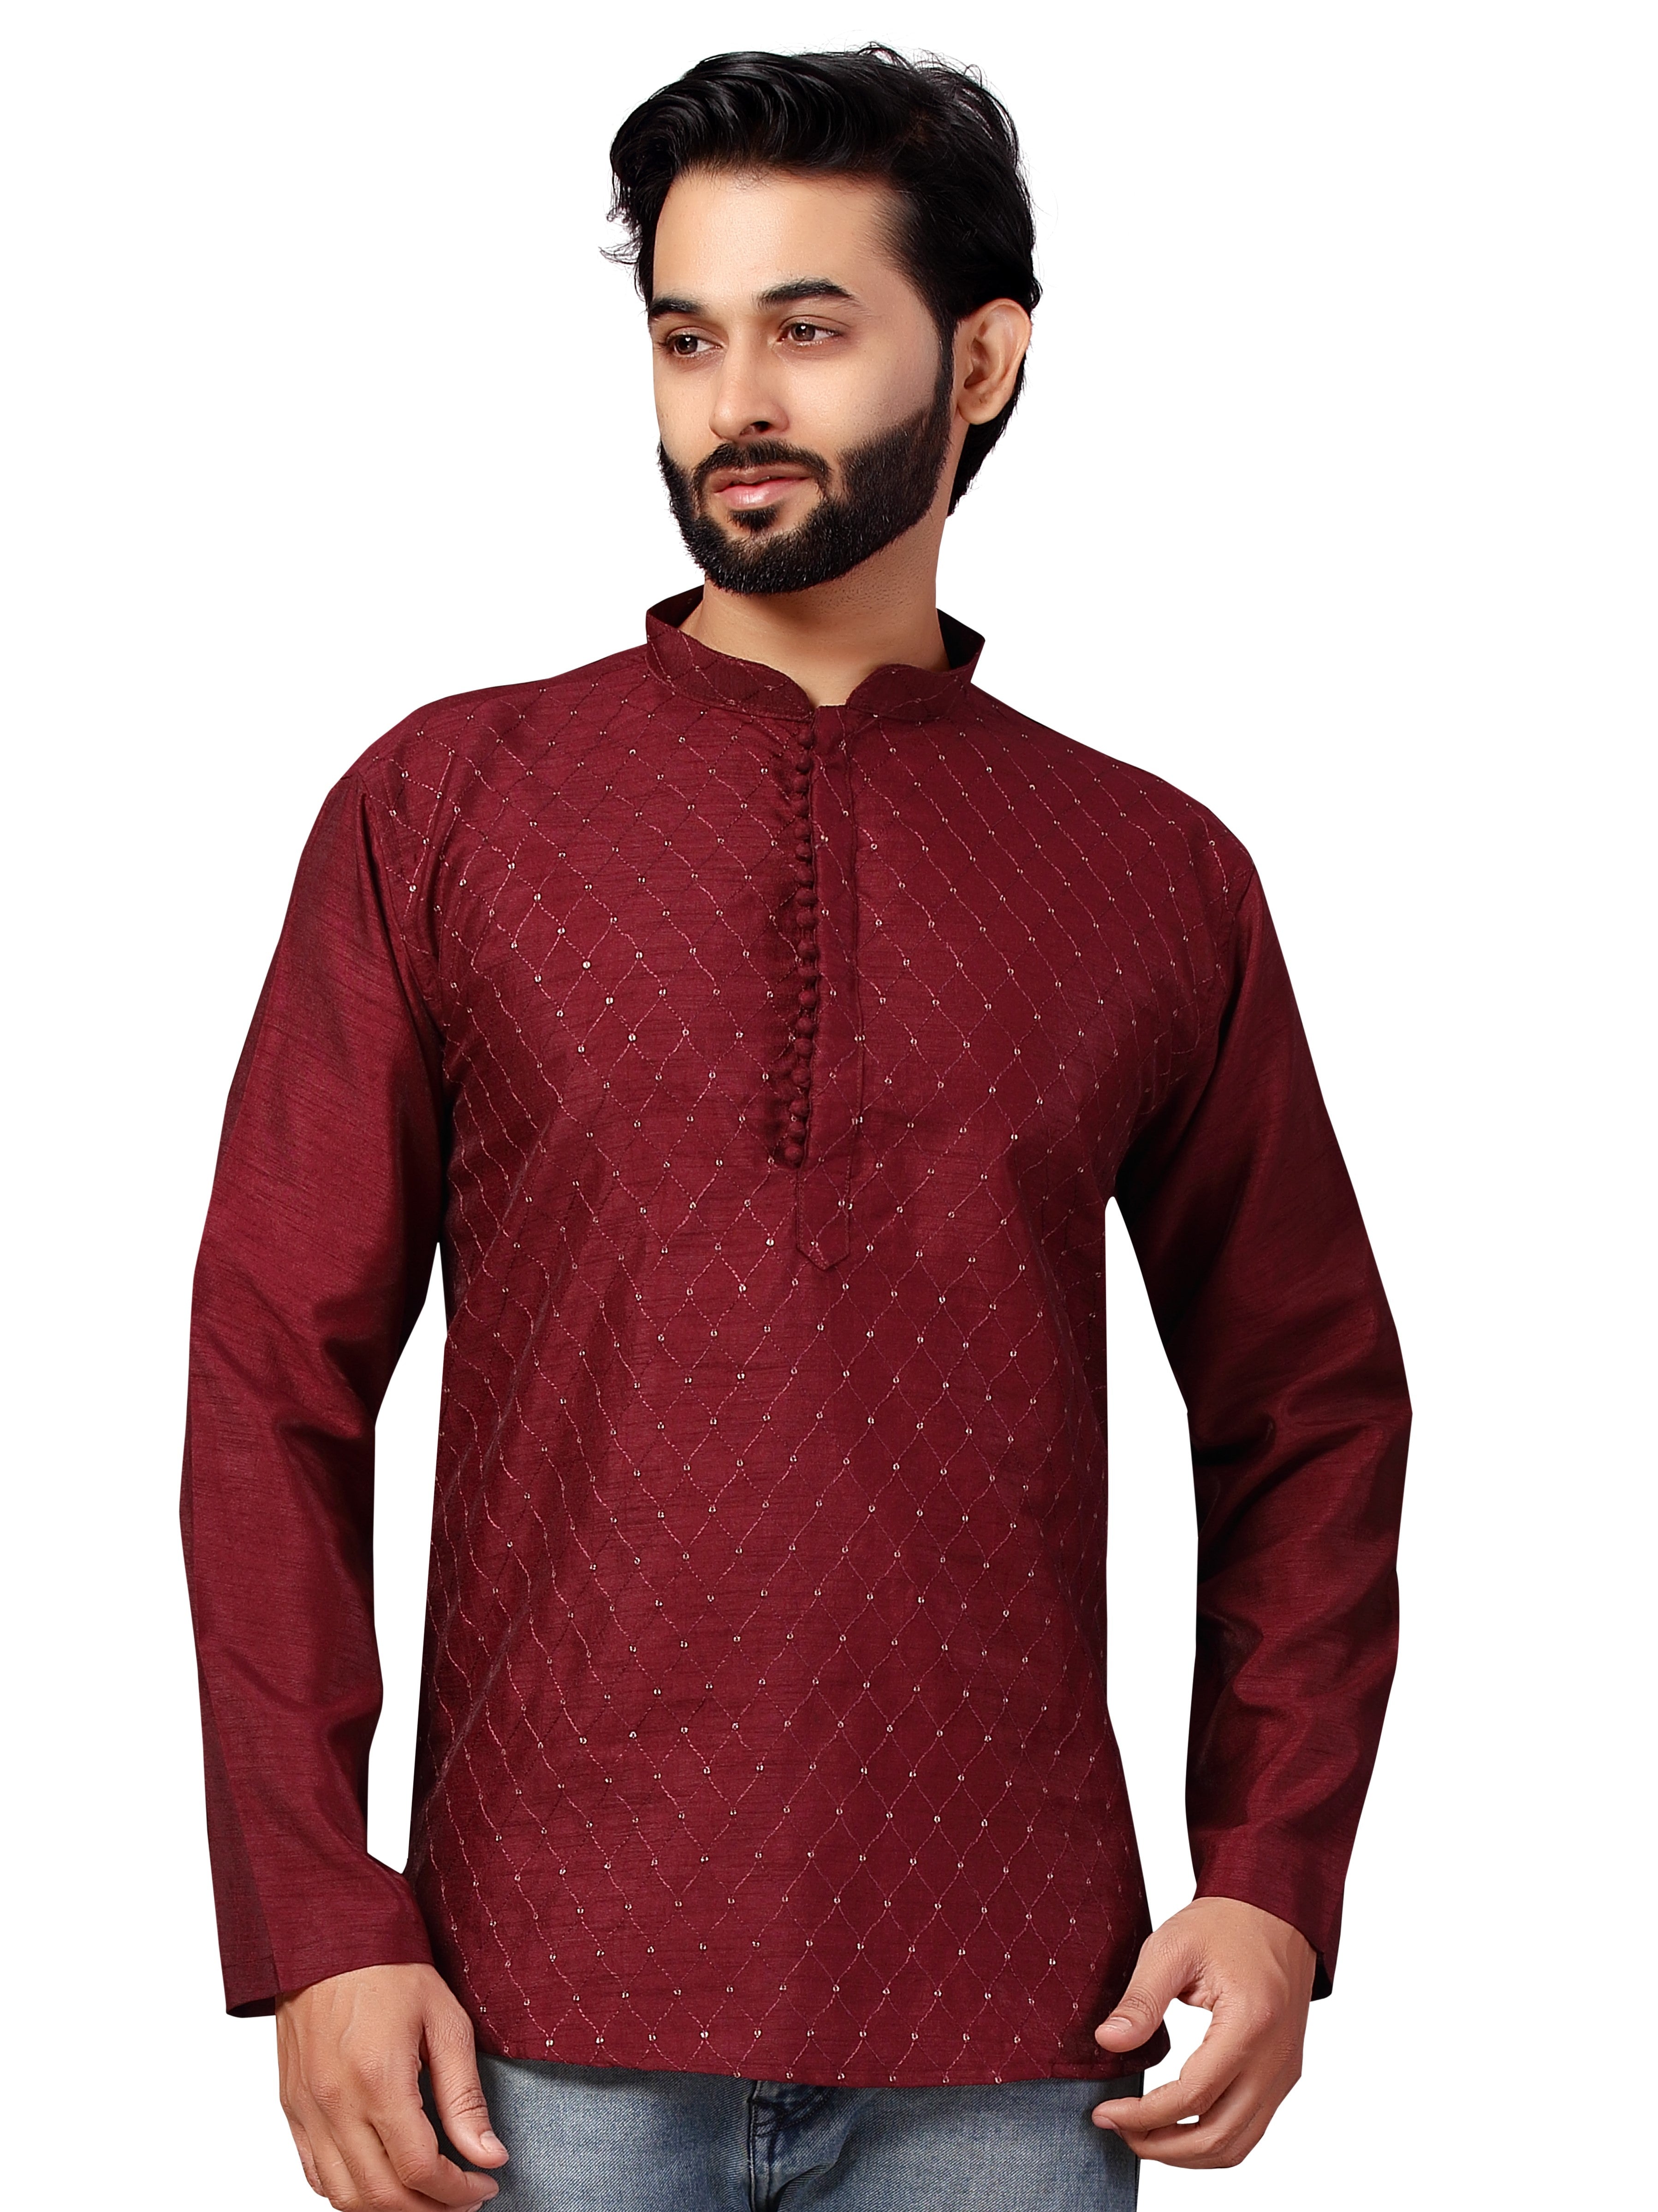 Traditional Indian Men's Suit Pakistan Kurti Long Top - India & Pakistan  Clothing - AliExpress